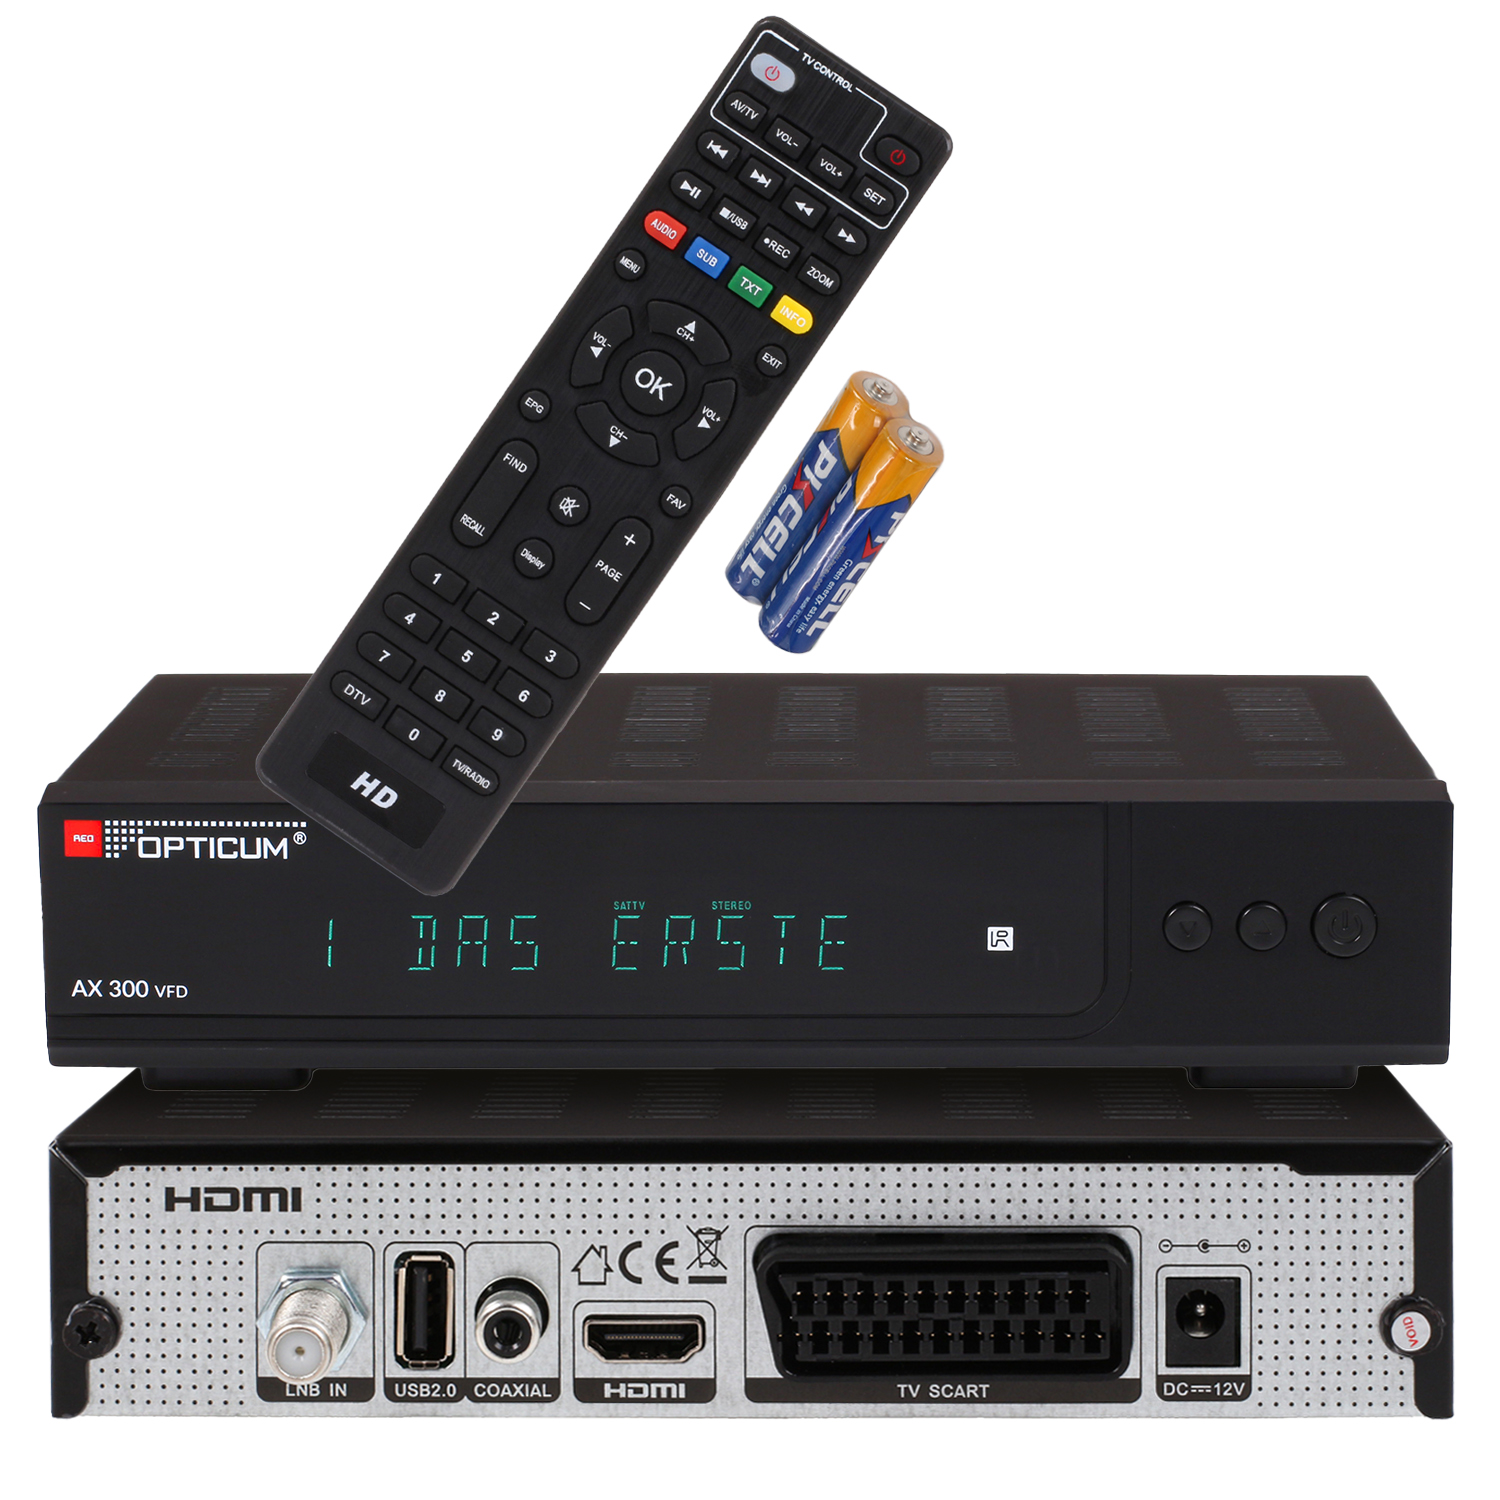 RED OPTICUM AX - Satelliten-Receiver DVB-S2 I Sat 12 Digitaler HD-TV 300 (HDTV, Receiver DVB-S2, alphanumerischem Receiver mit VFD DVB-S, schwarz) Display V